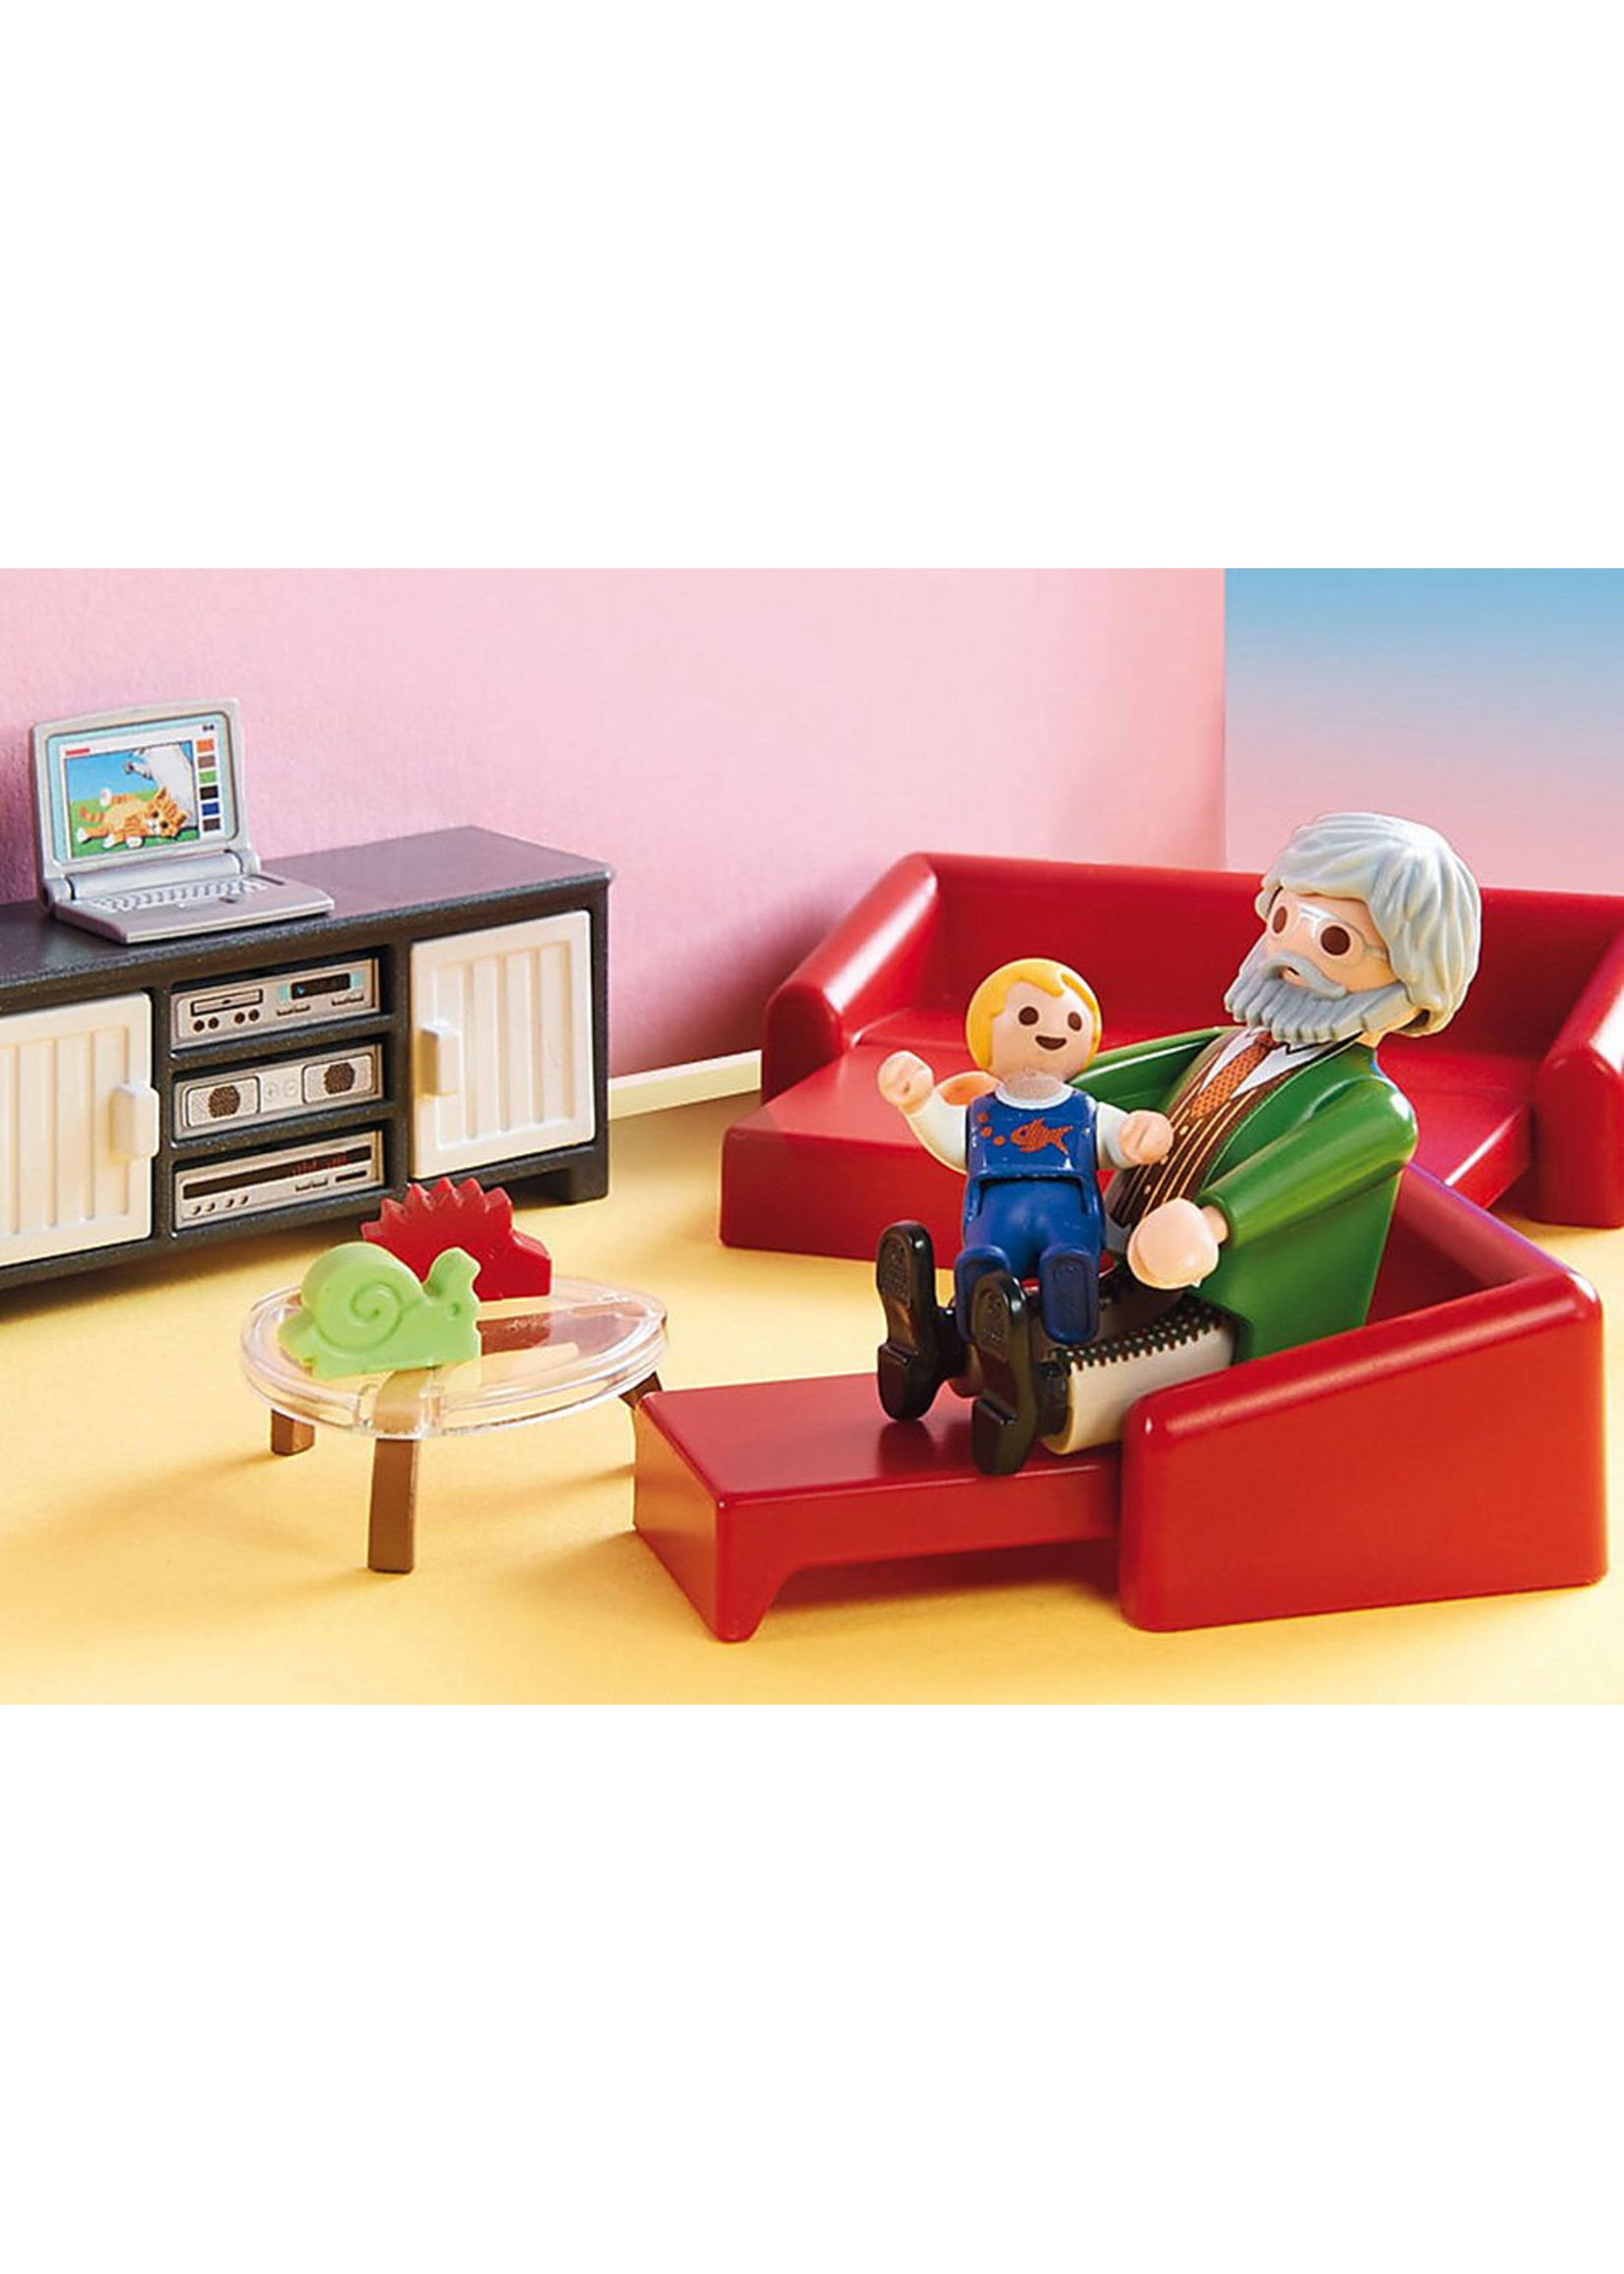 Playmobil 70207 - Comfortable Living Room